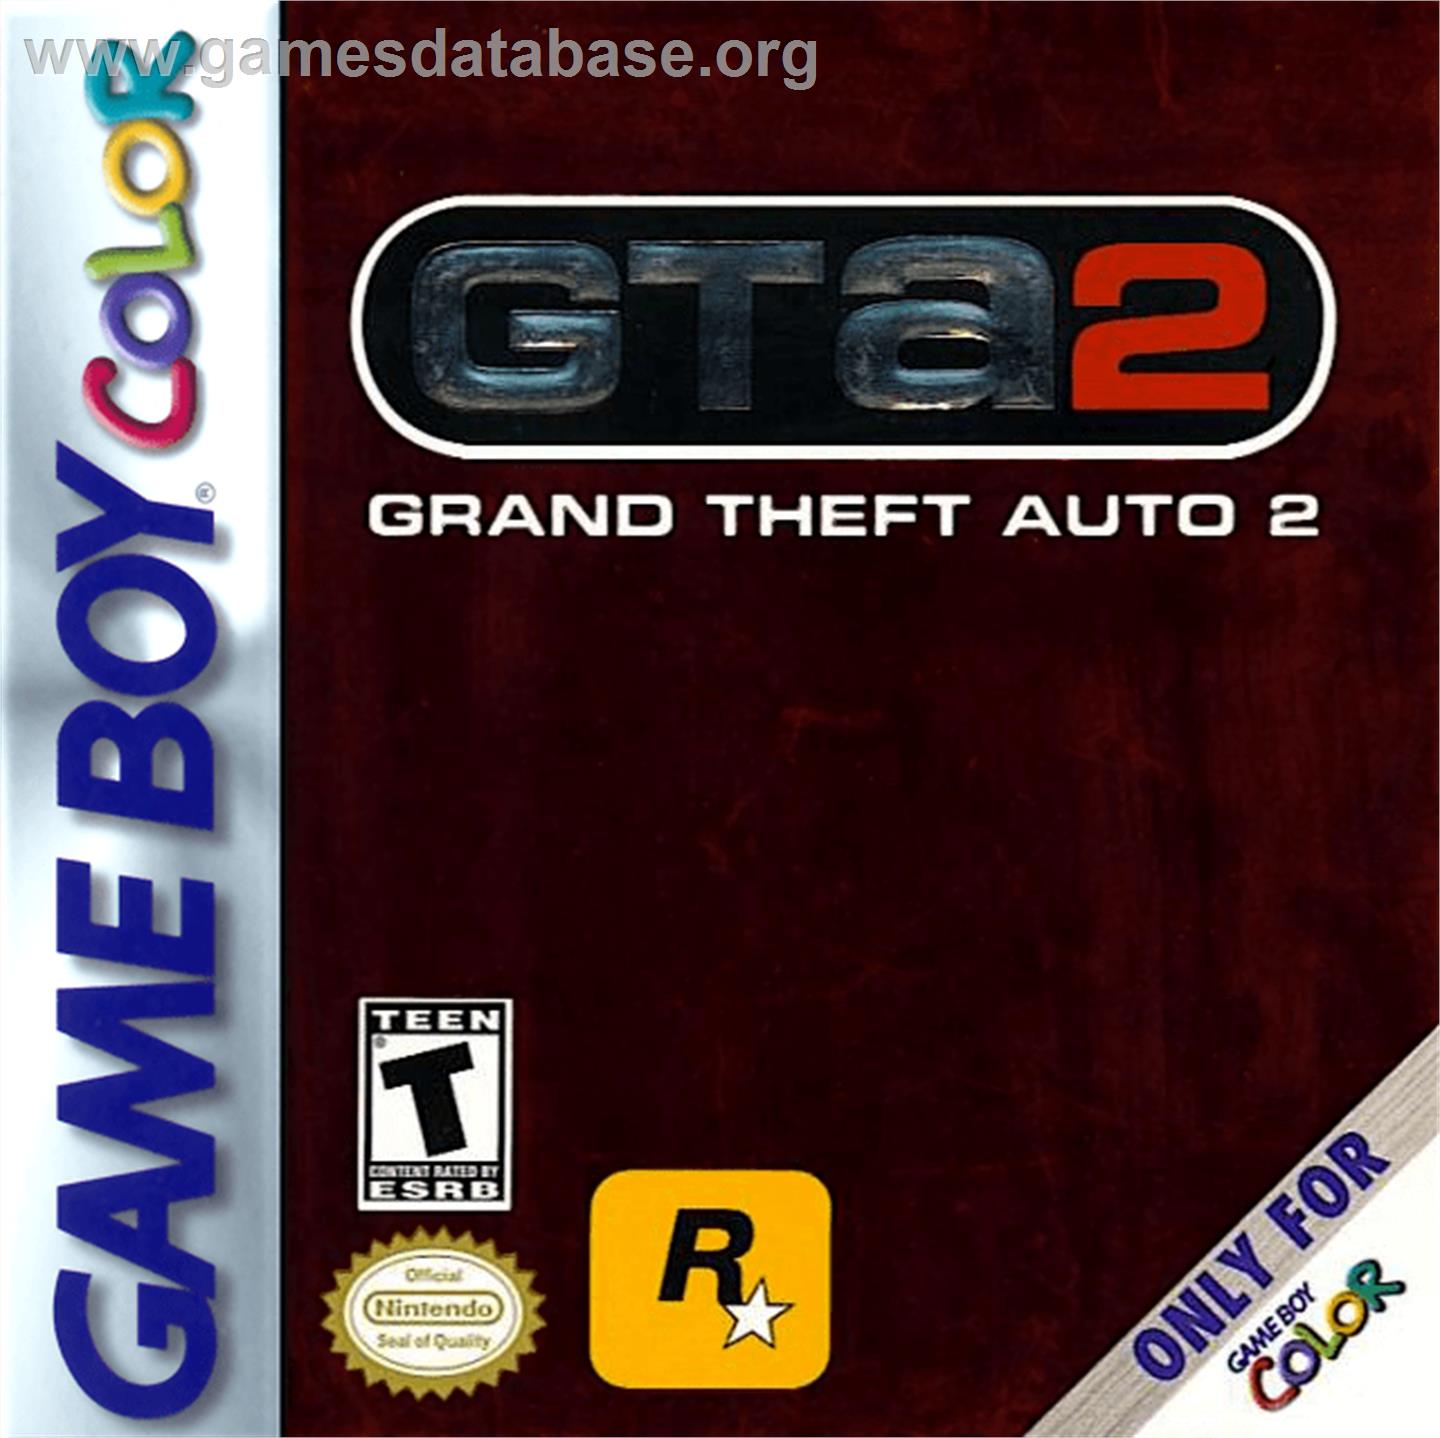 Grand Theft Auto 2 - Nintendo Game Boy Color - Artwork - Box